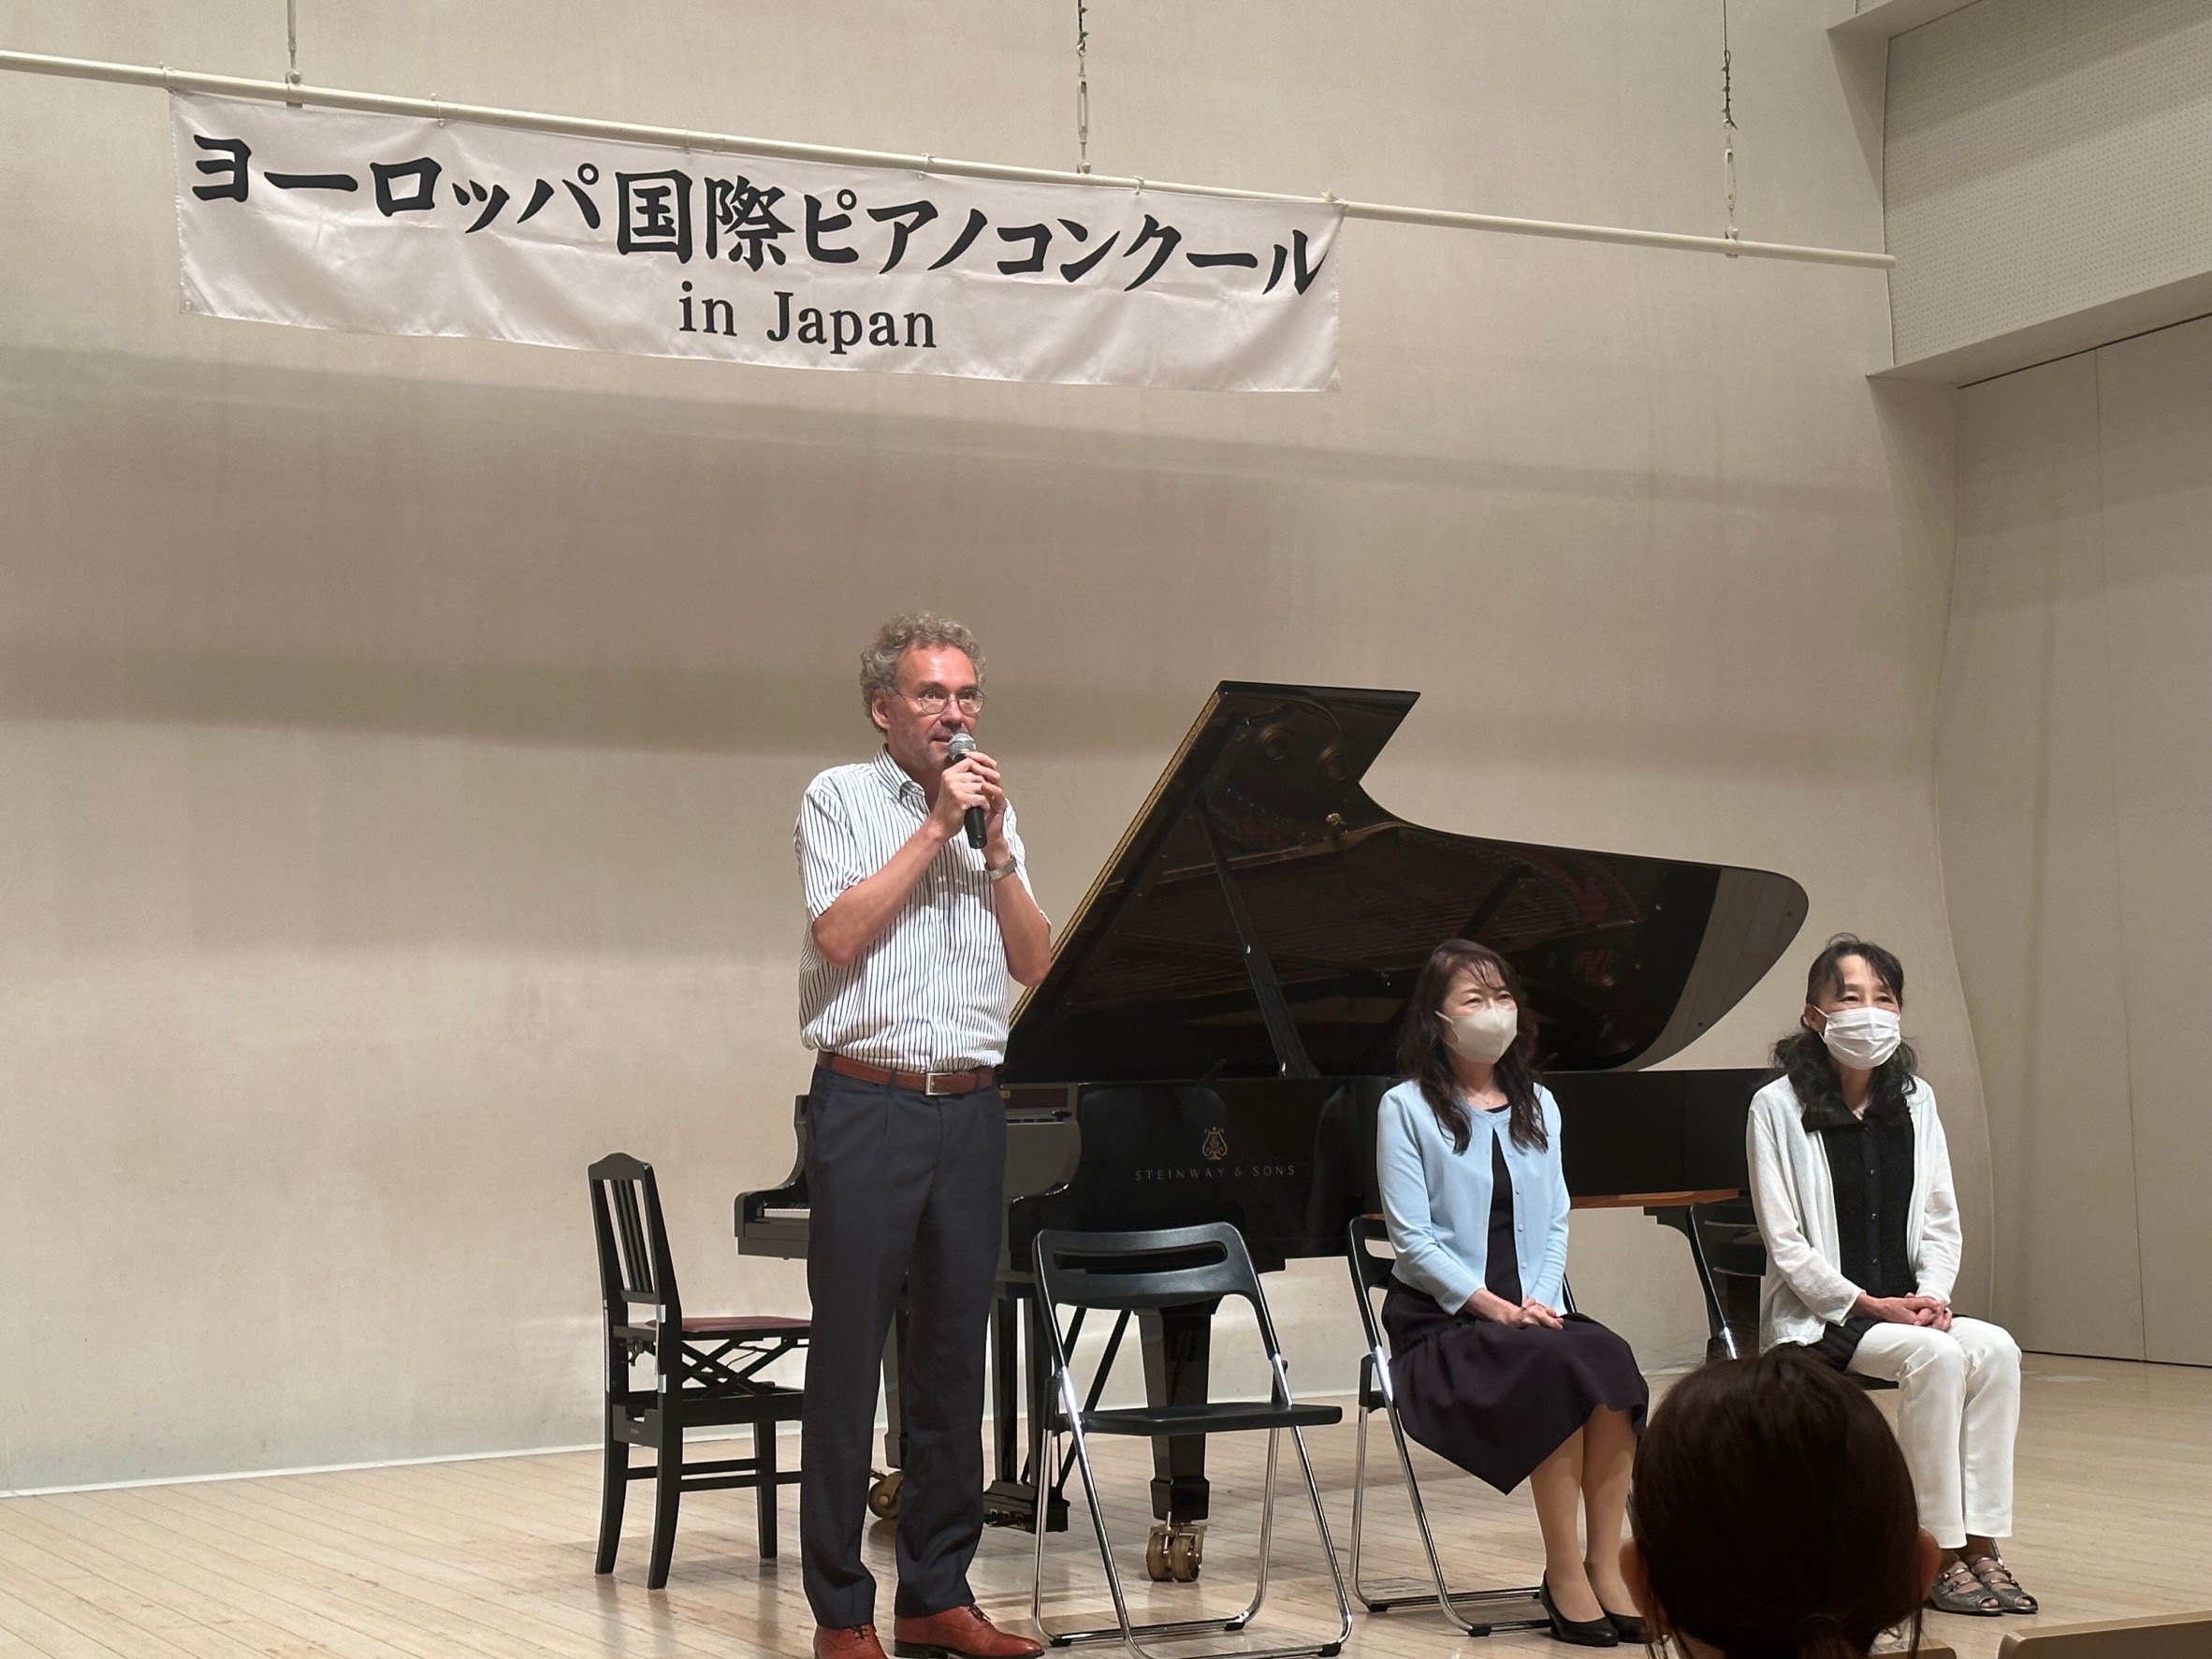 第14回ヨーロッパ国際ピアノコンクールin Japan 千葉地区予選